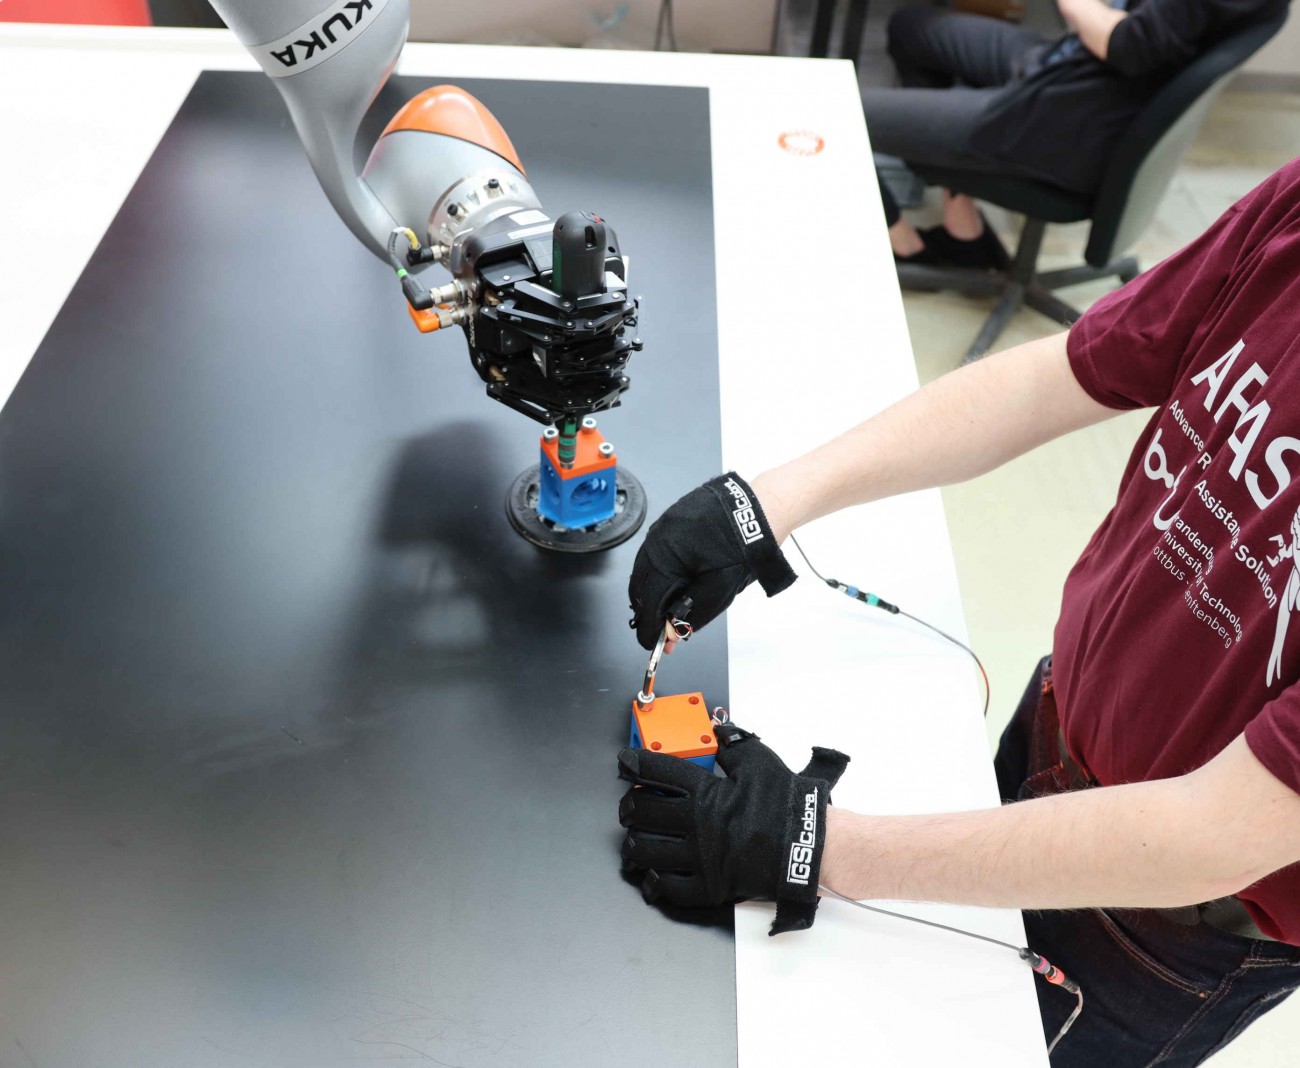 Anlernen und Nachahmen eines kollaborativen Roboter bei einer Montage